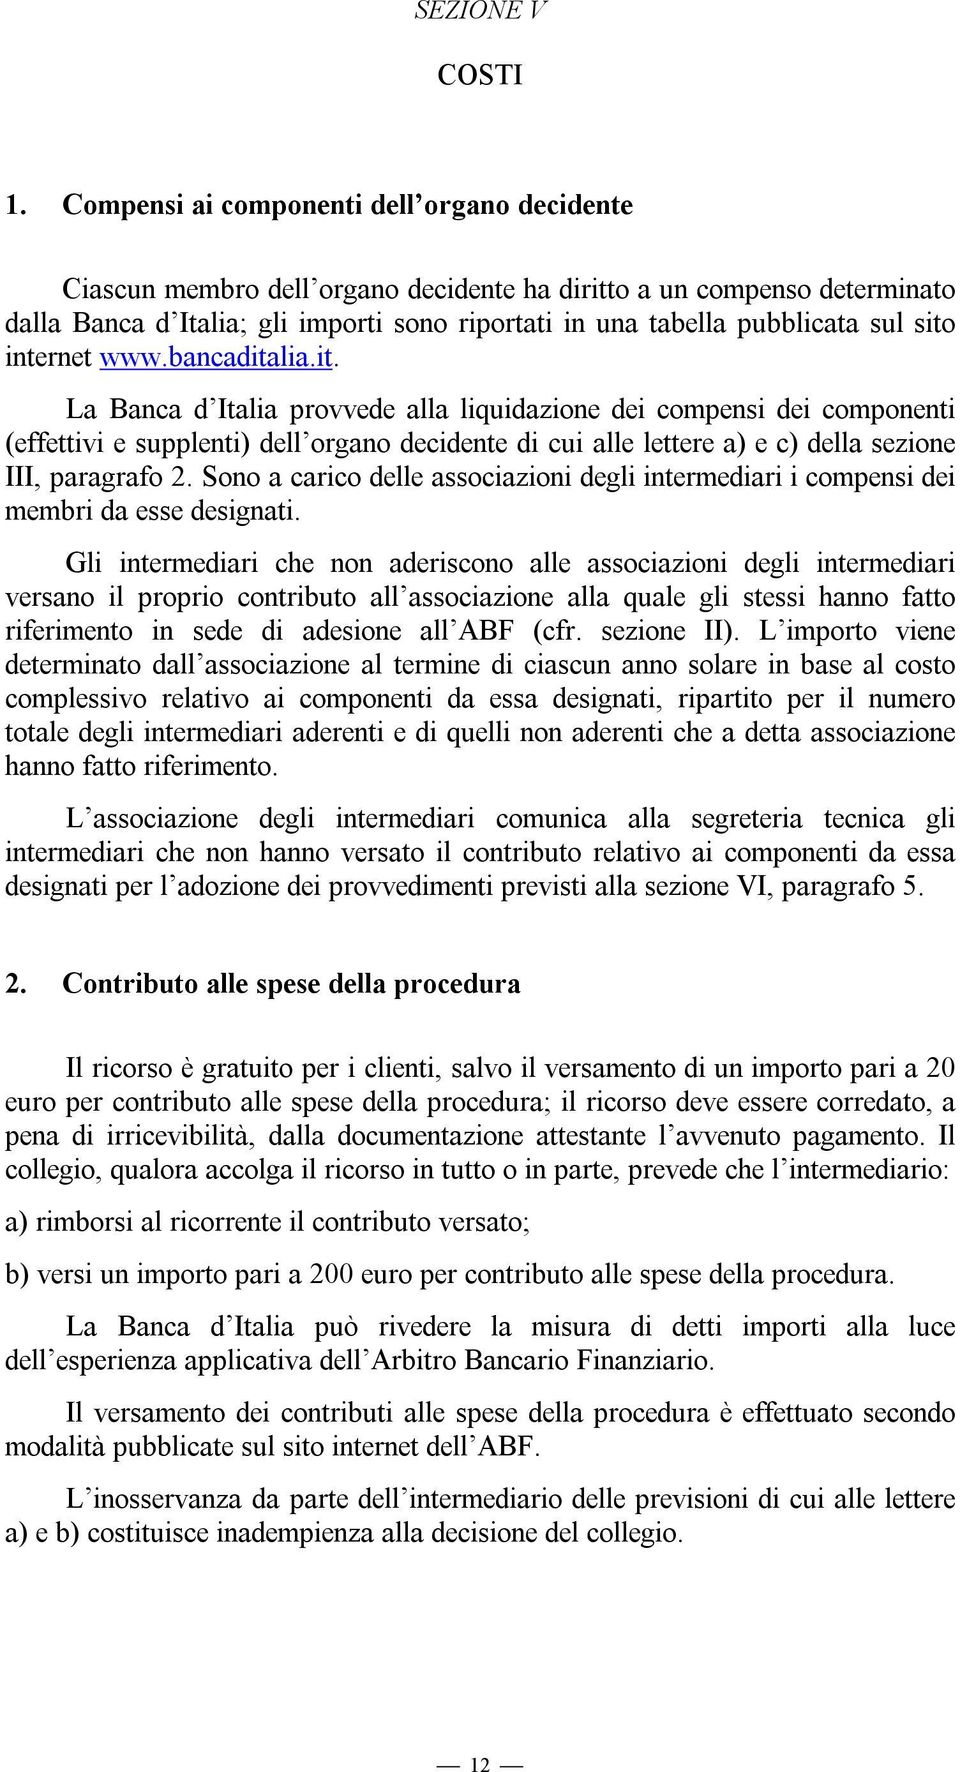 sito internet www.bancaditalia.it. La Banca d Italia provvede alla liquidazione dei compensi dei componenti (effettivi e supplenti) dell organo decidente di cui alle lettere a) e c) della sezione III, paragrafo 2.